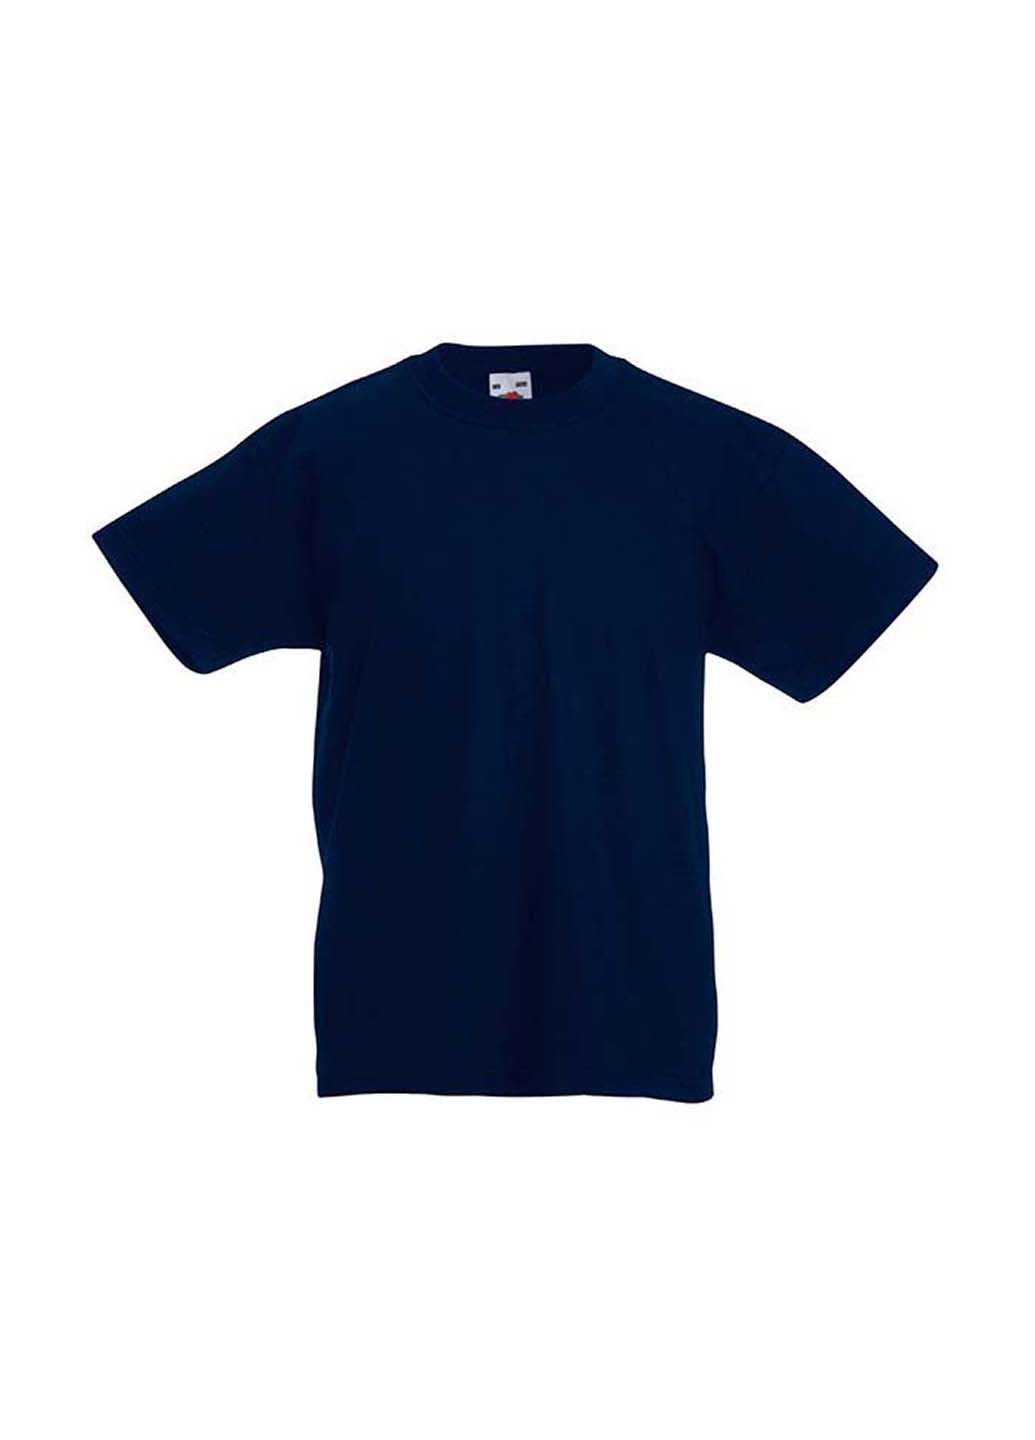 Темно-синяя демисезонная футболка Fruit of the Loom 0610190AZ164